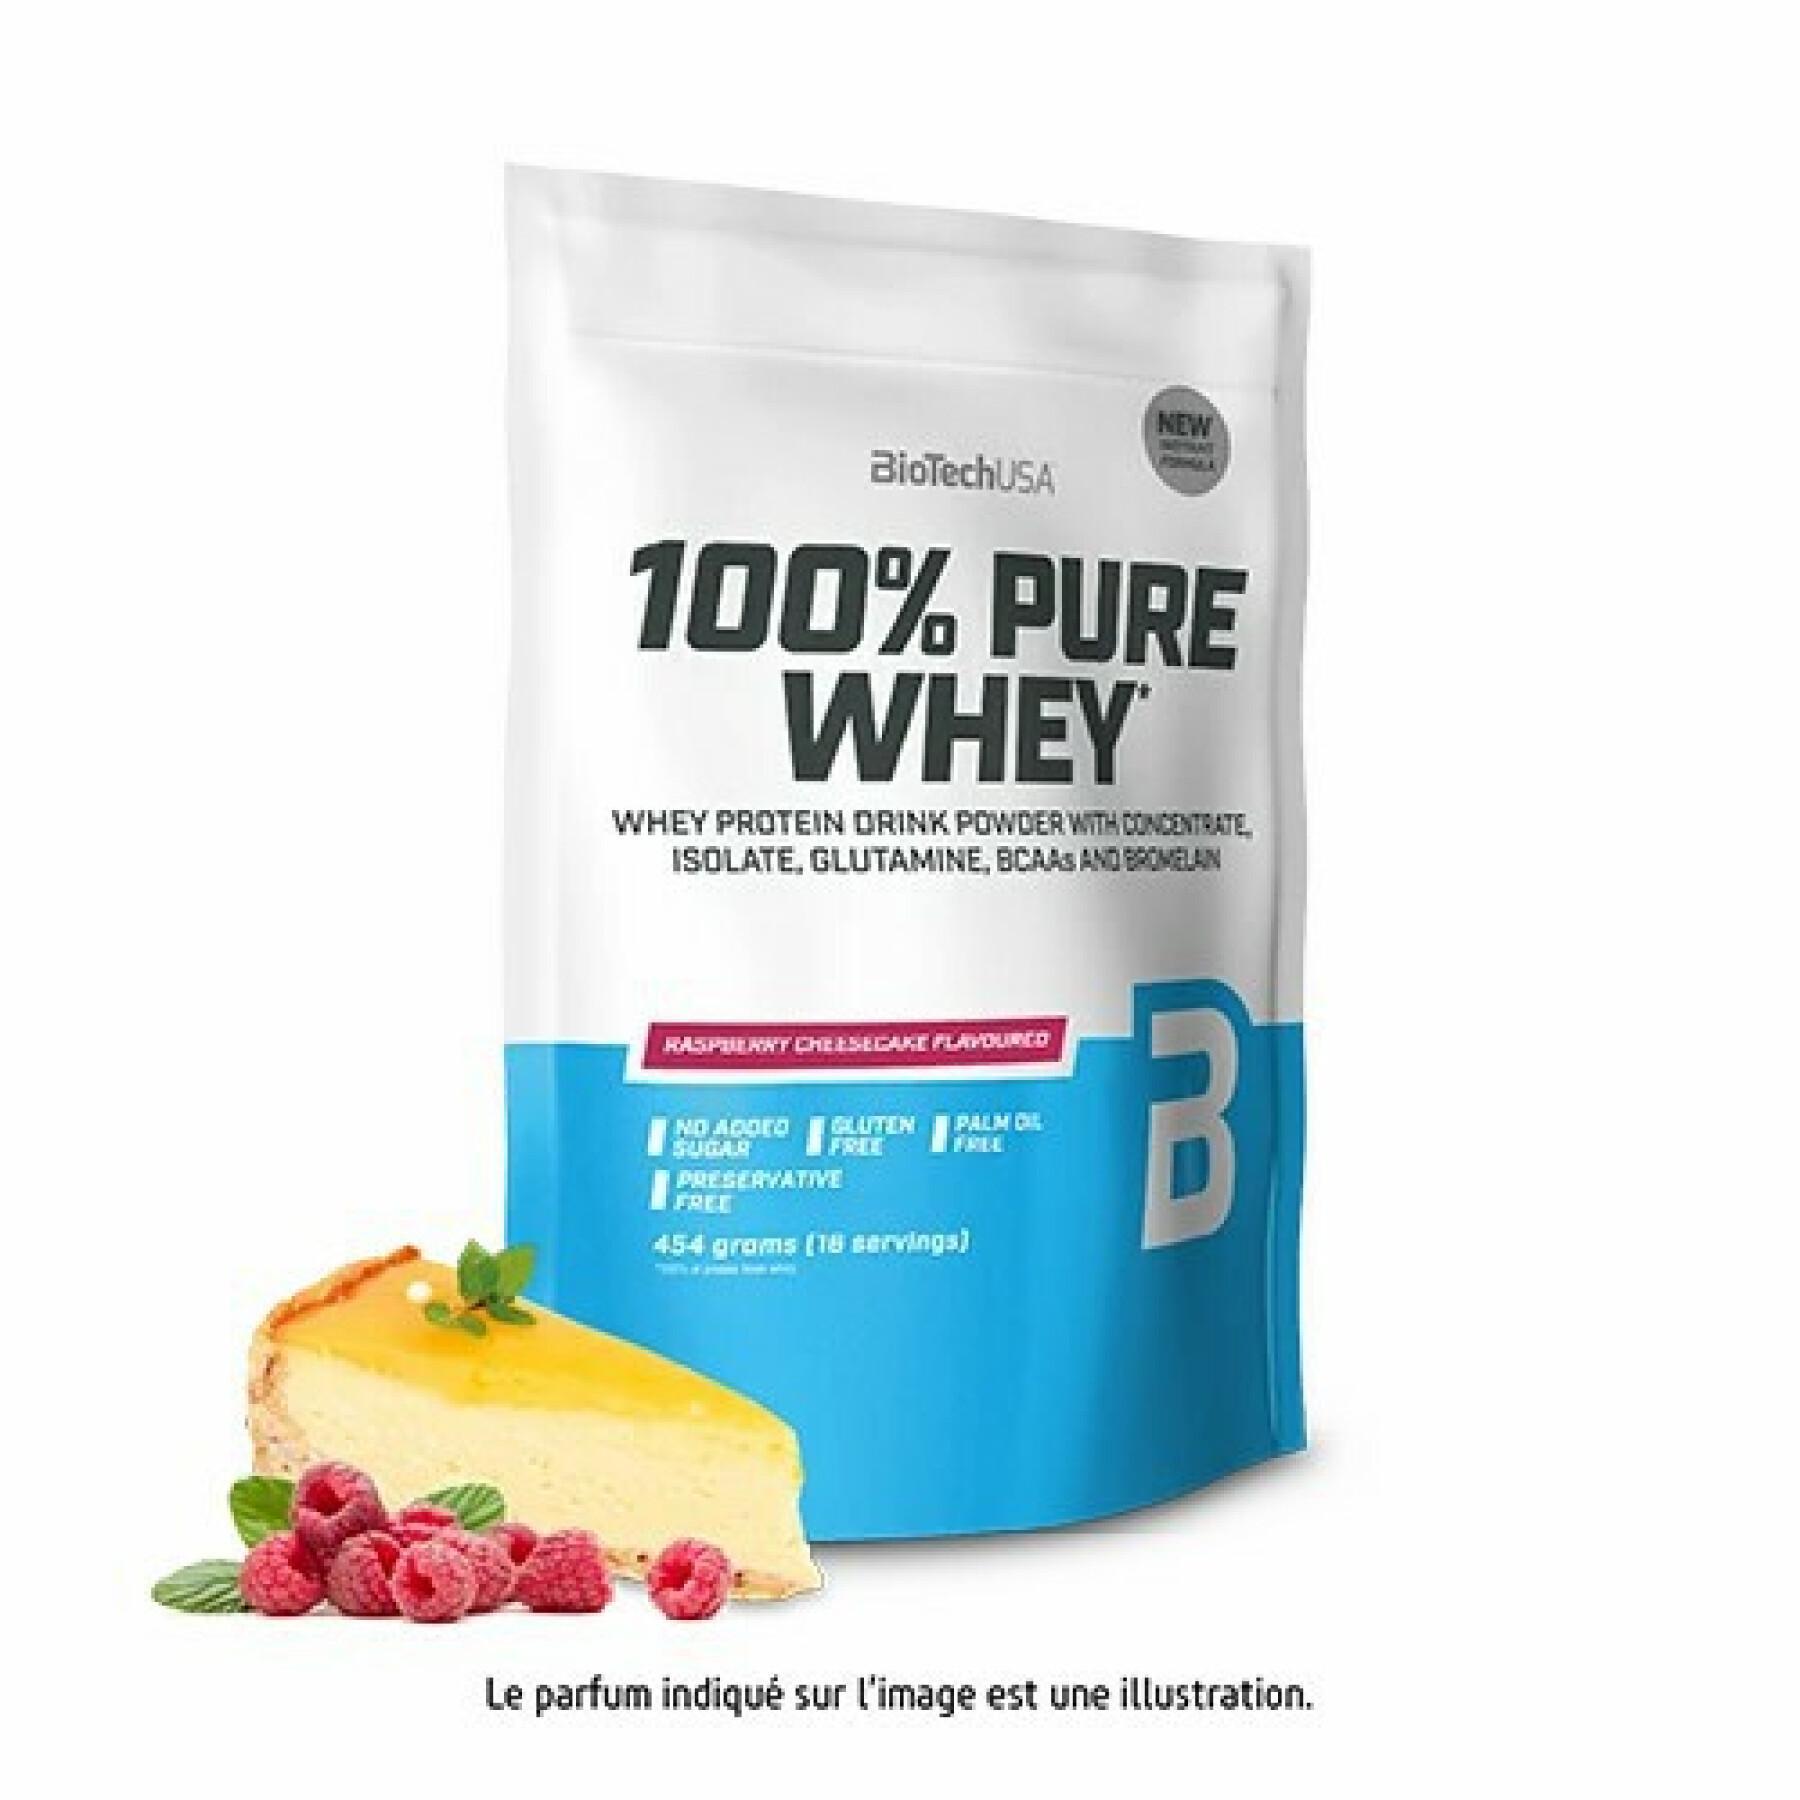 Paquete de 10 bolsas de proteína de suero 100% pura Biotech USA - Cheesecake aux frambois - 454g